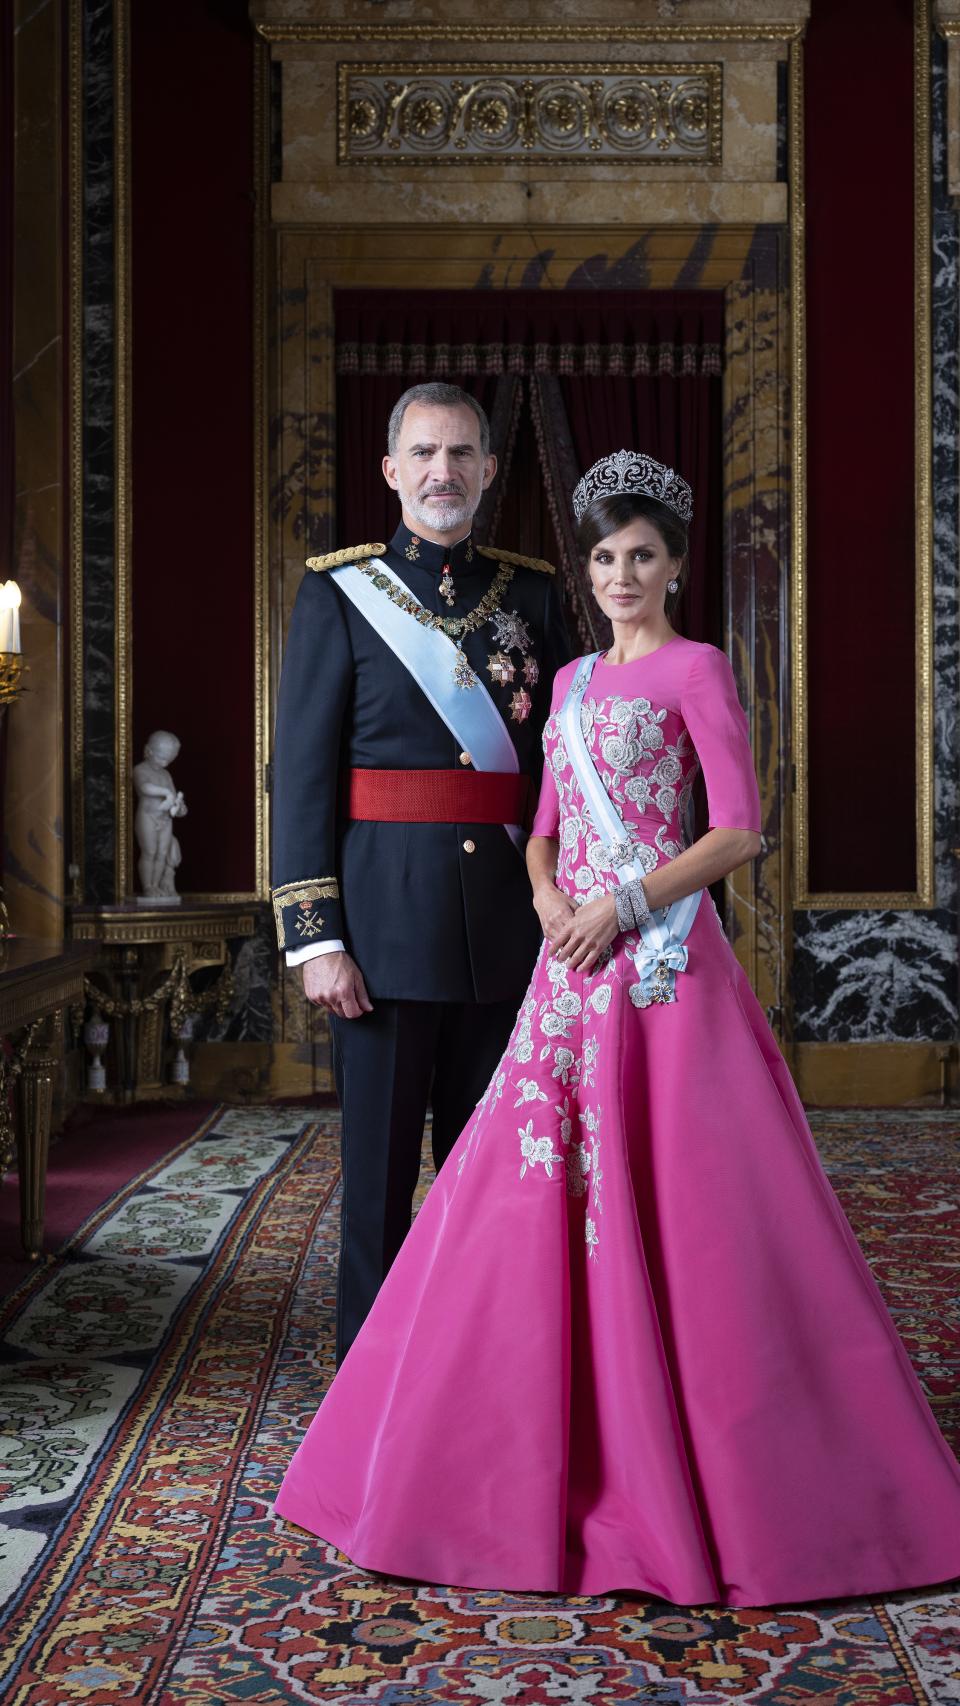 Felipe VI y Letizia, en un retrato oficial en el Palacio Real.